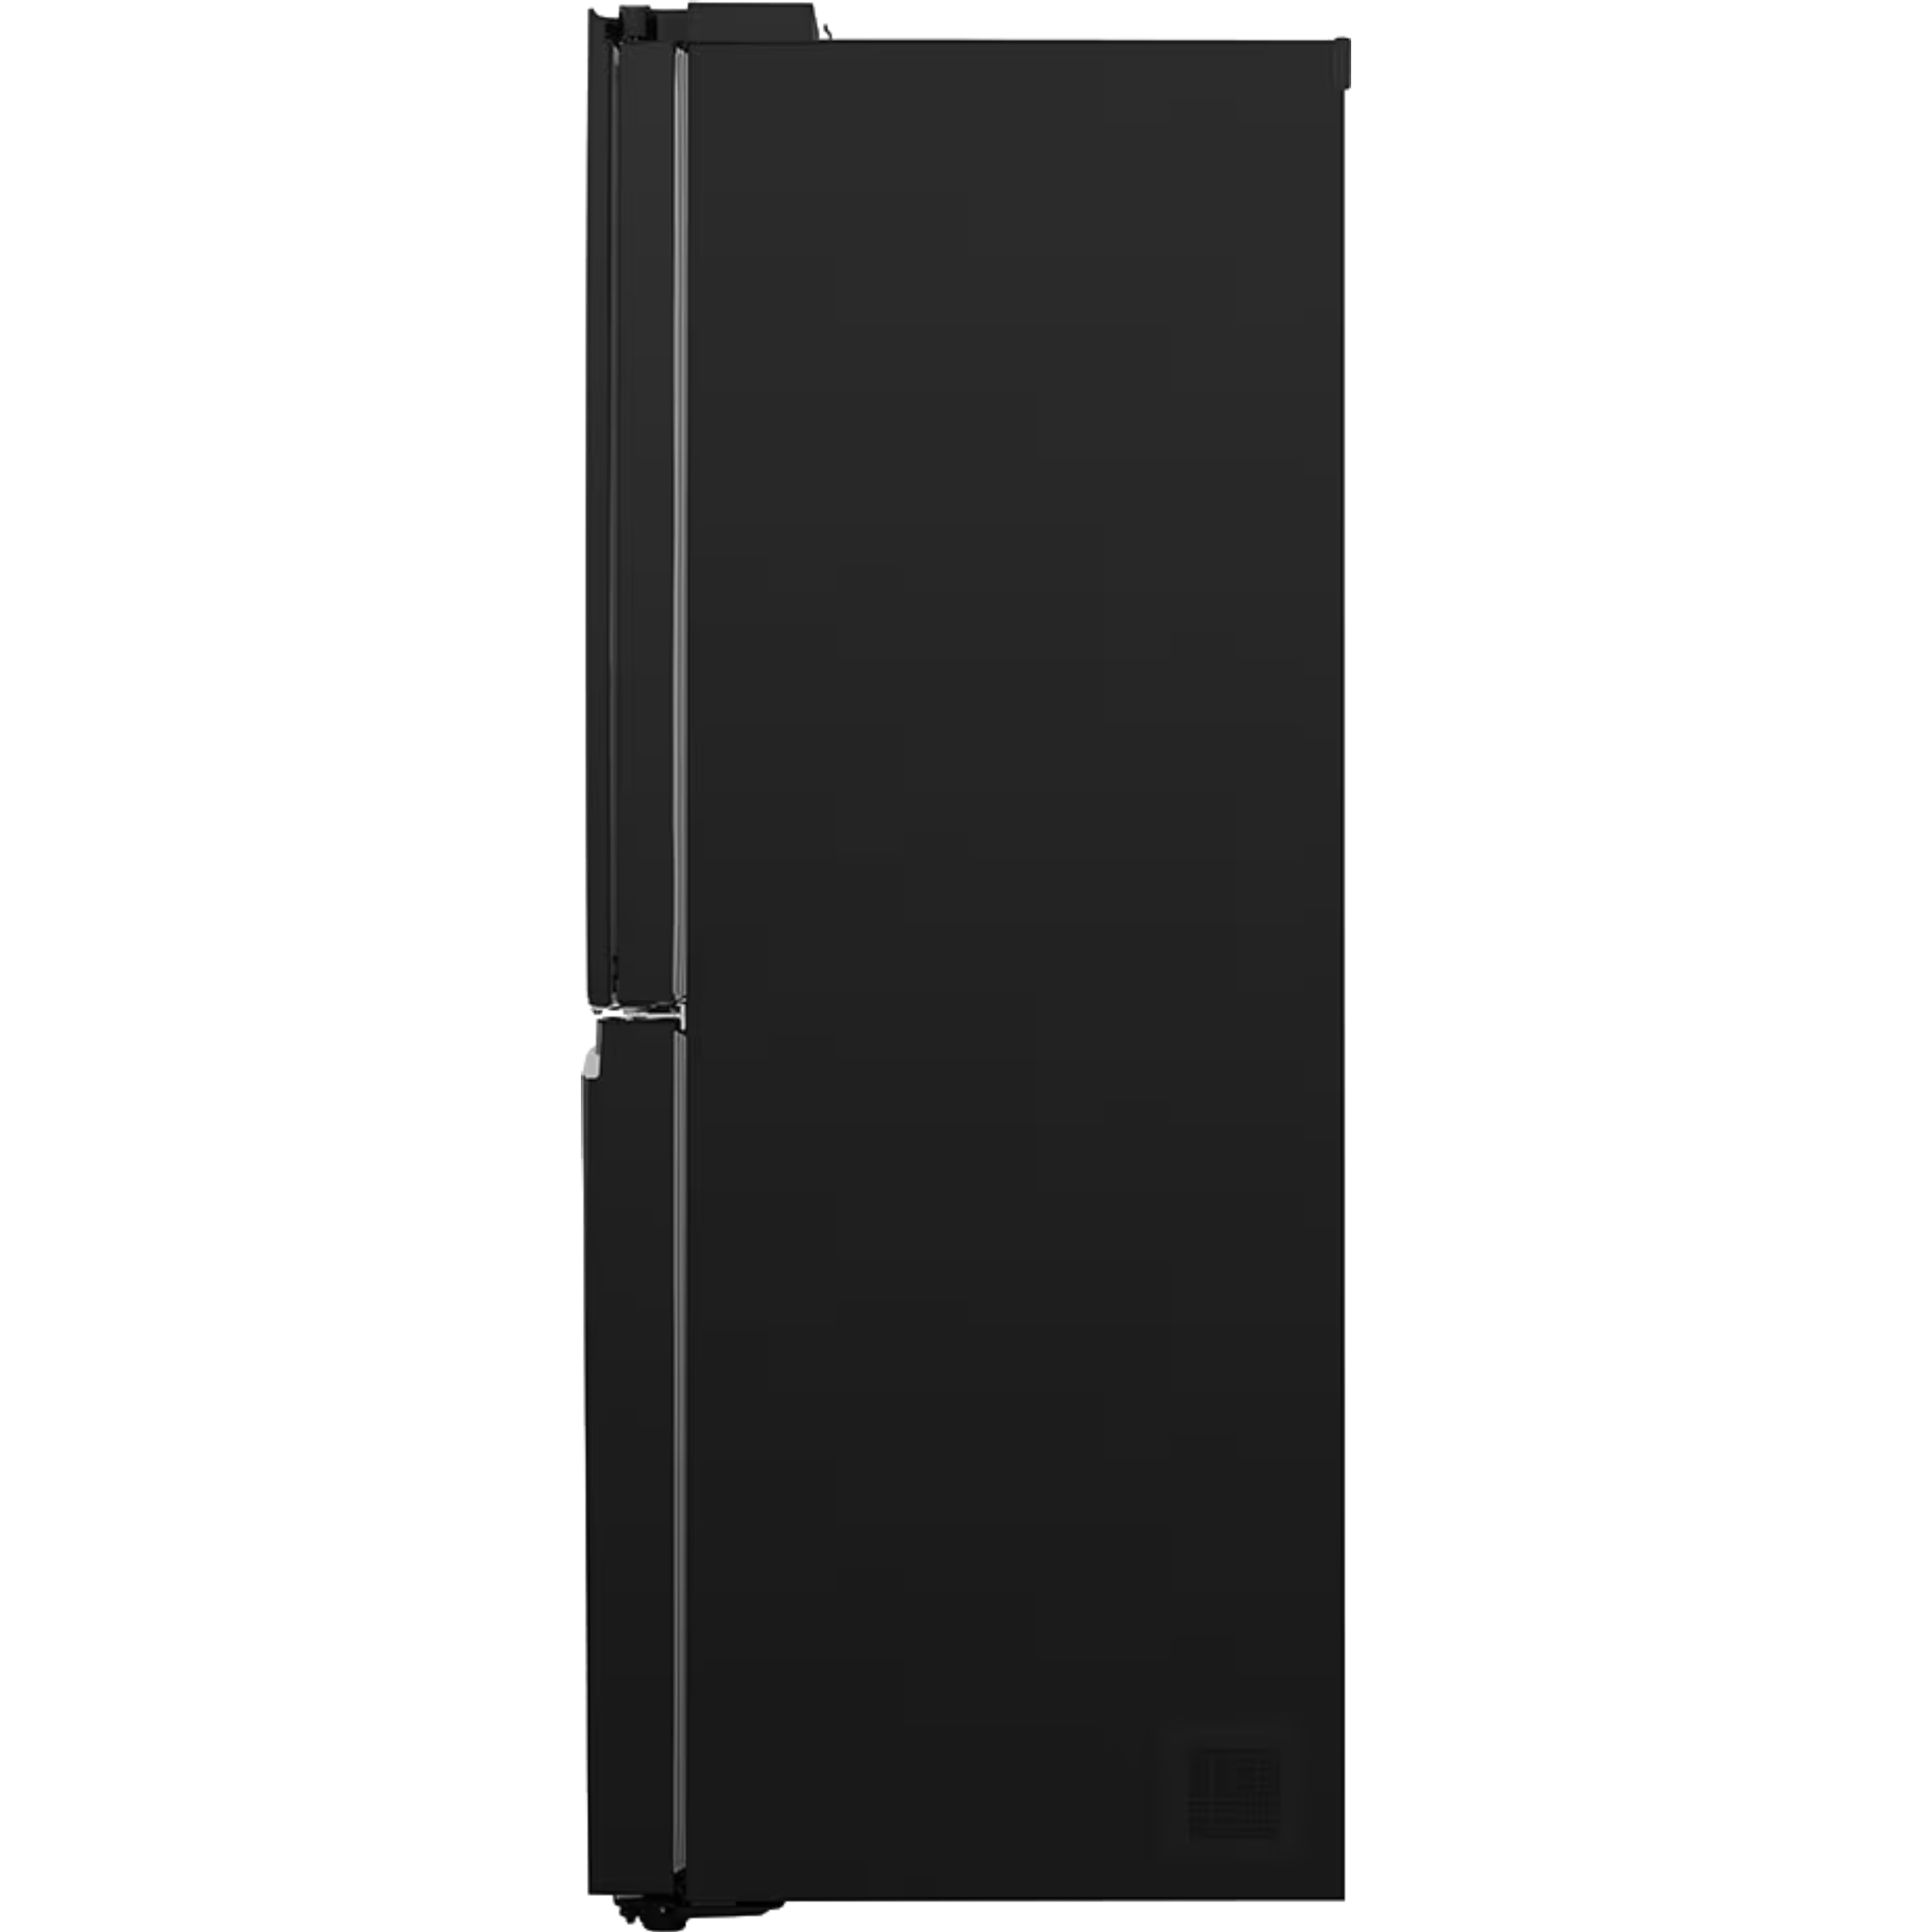 מקרר 4 דלתות מקפיא תחתון 530 ליטר LG GR-608BEDID עם התקן שבת מובנה - גימור זכוכית שחורה אחריות ע